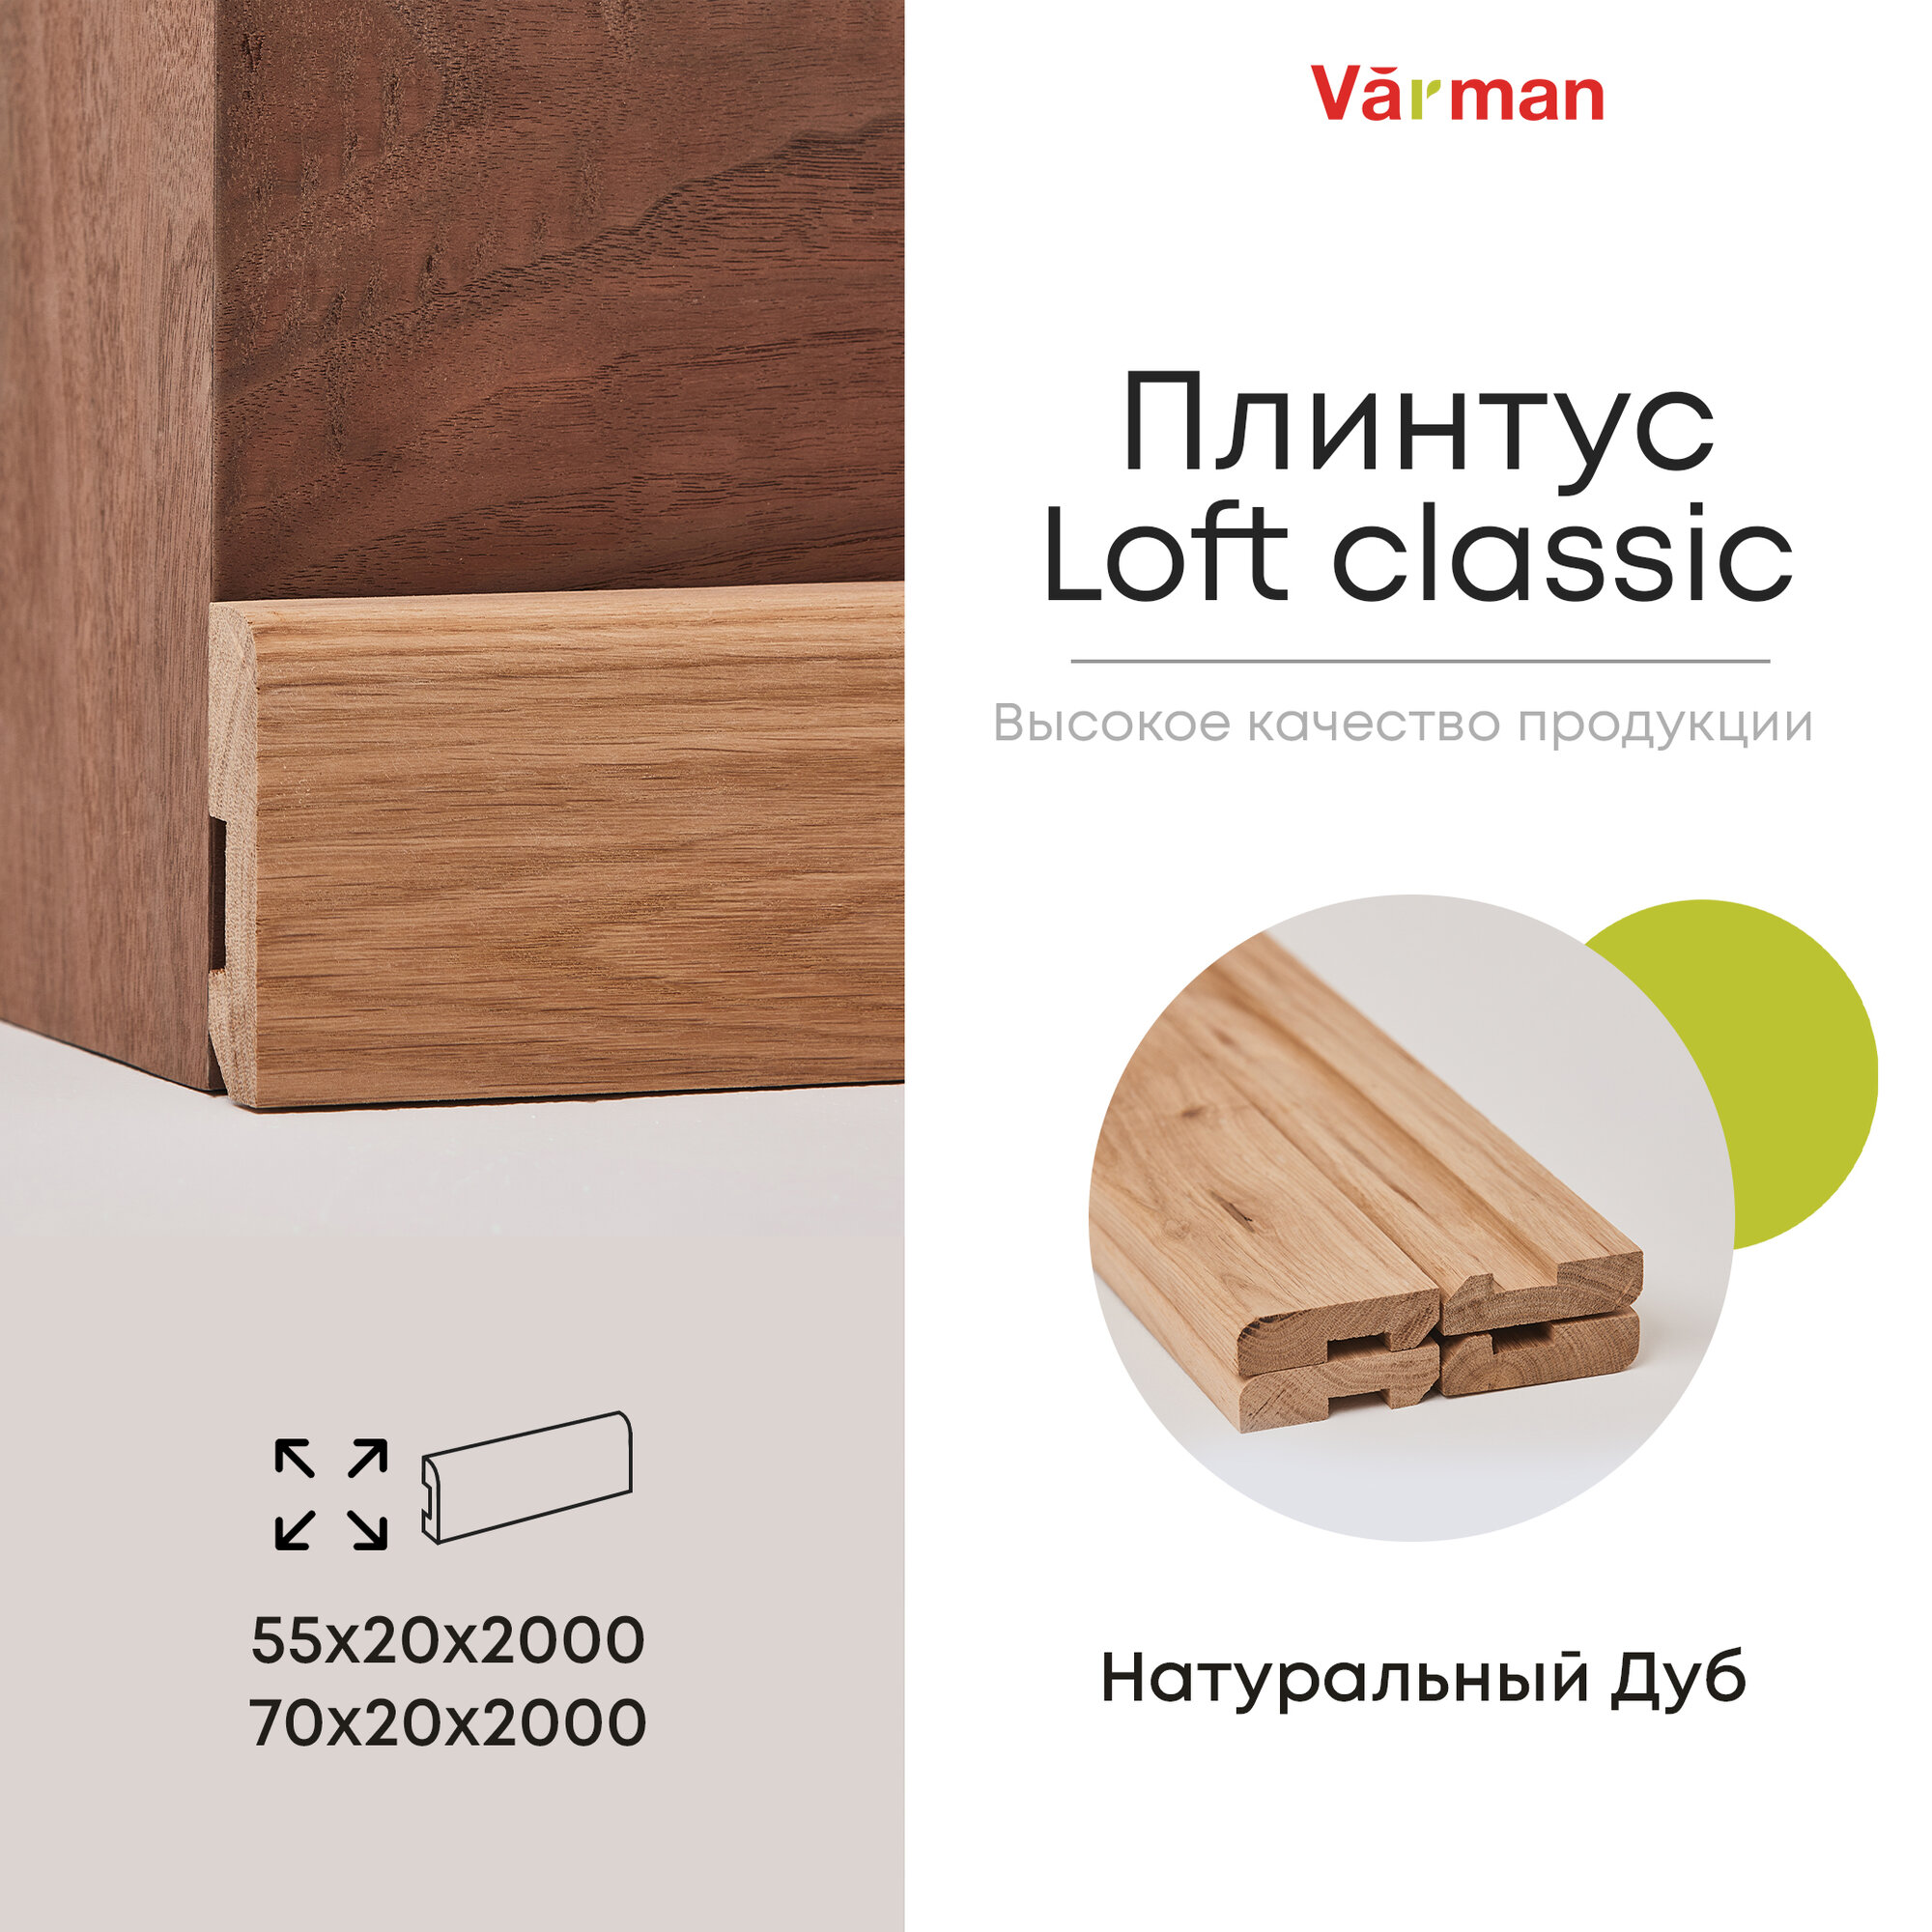 Плинтус Loft classic деревянный, Дуб Pepper 70х20х2000 (1 шт), Varman.pro